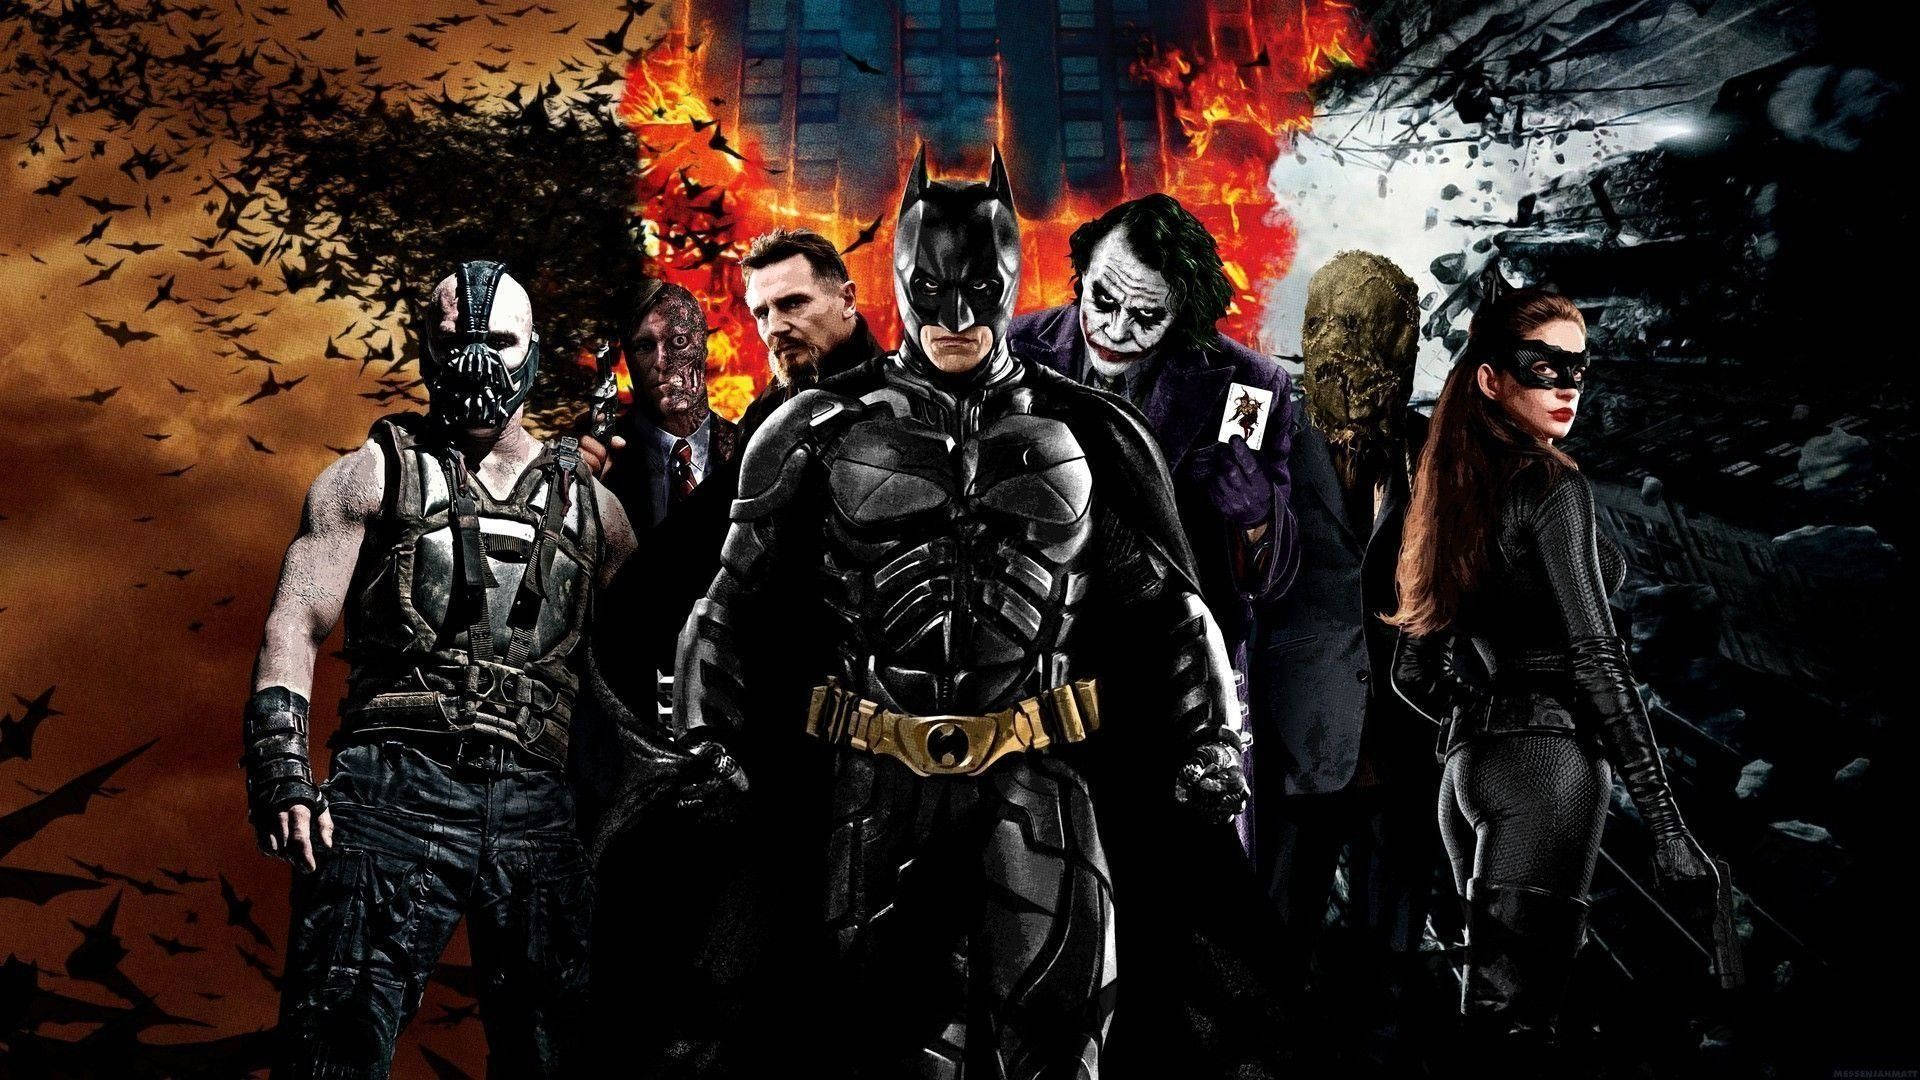 Dark Knight Batman And Villains Film Background